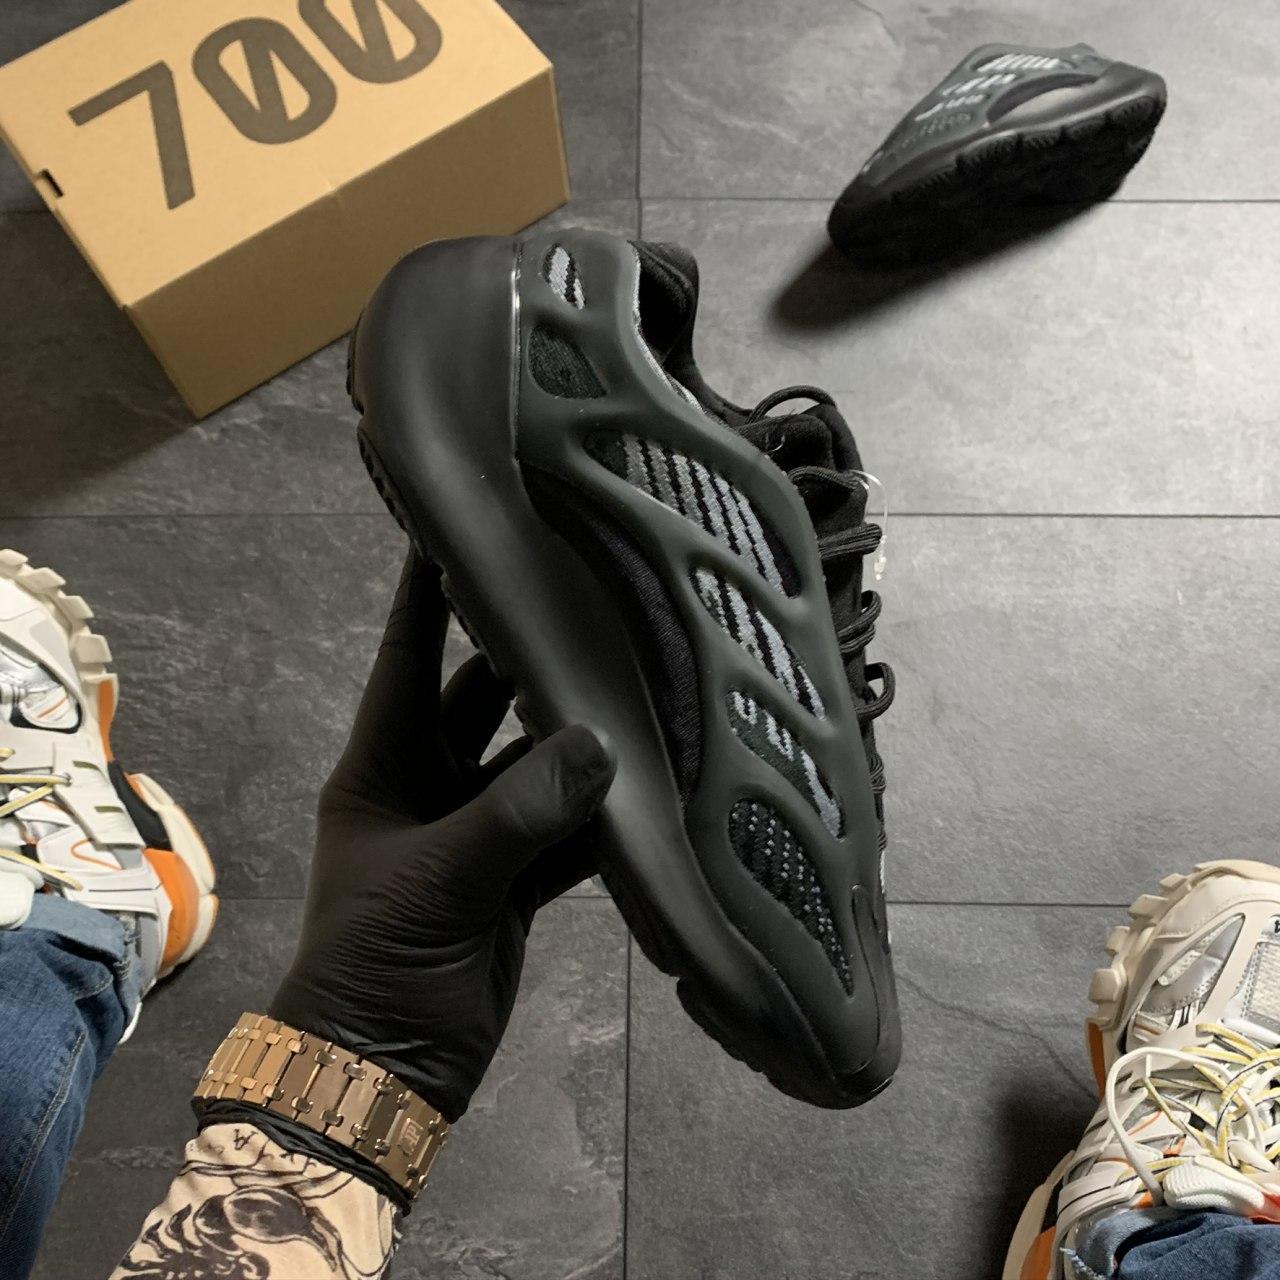 

Мужские кроссовки Adidas Yeezy Boost 700 V3 Triple Black / Адидас Изи Буст 700 В3 Трипл Черные 45, Черный